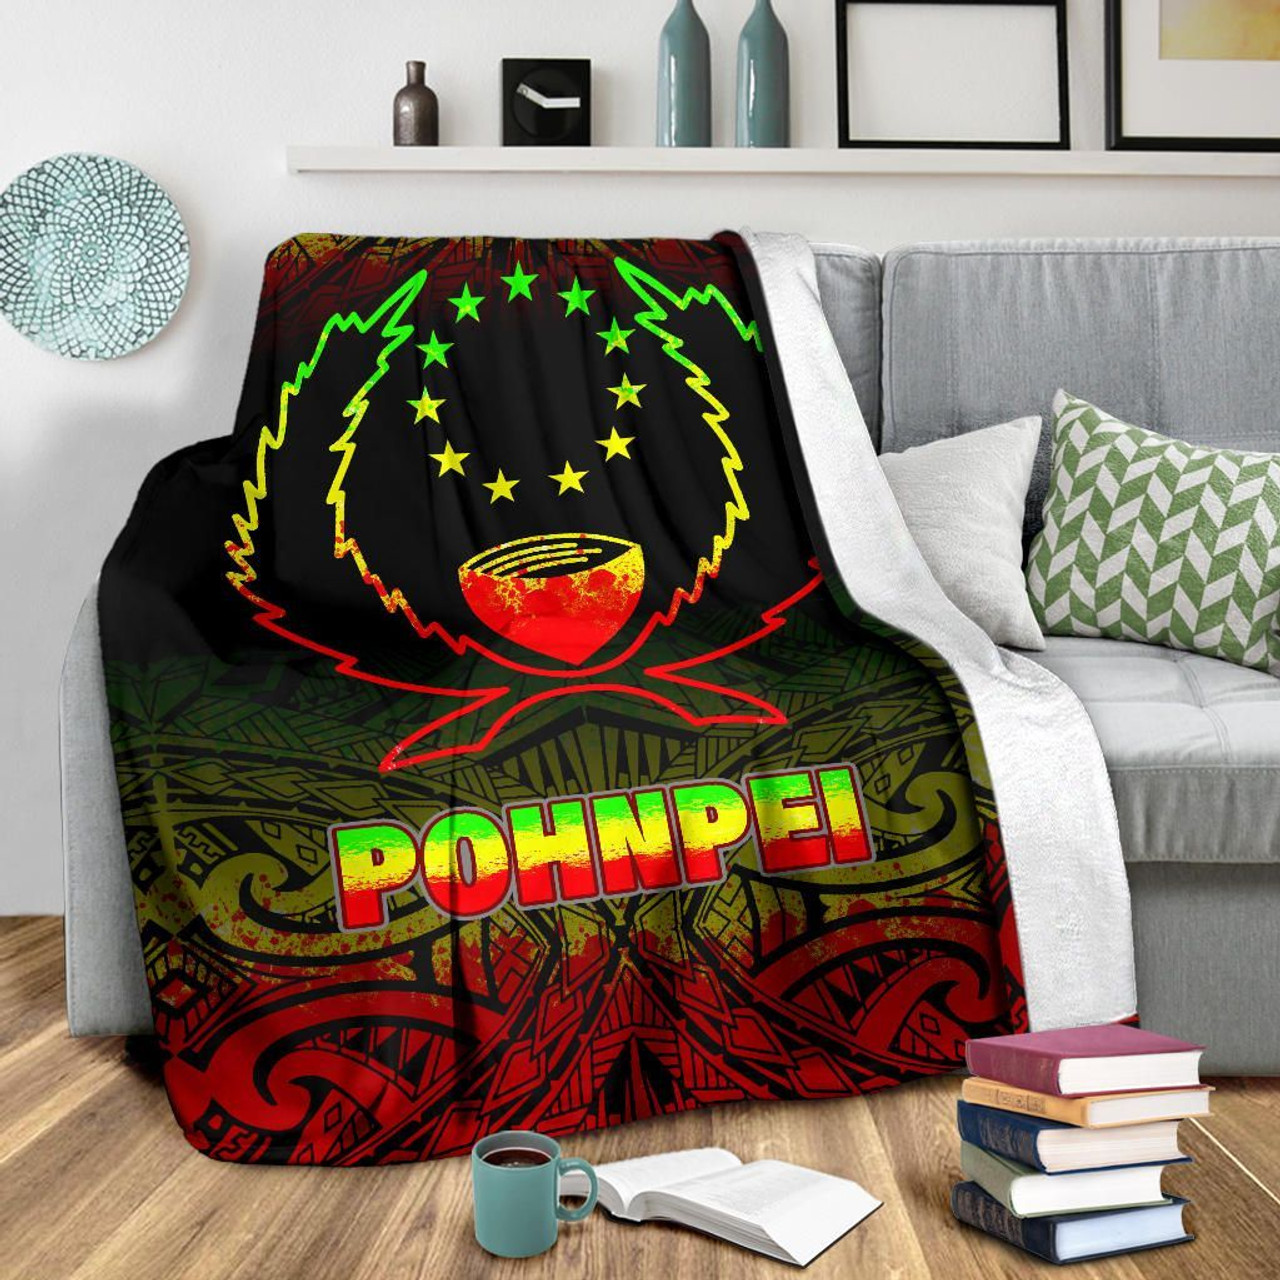 Pohnpei Premium Blanket - Reggae Fog Style 3